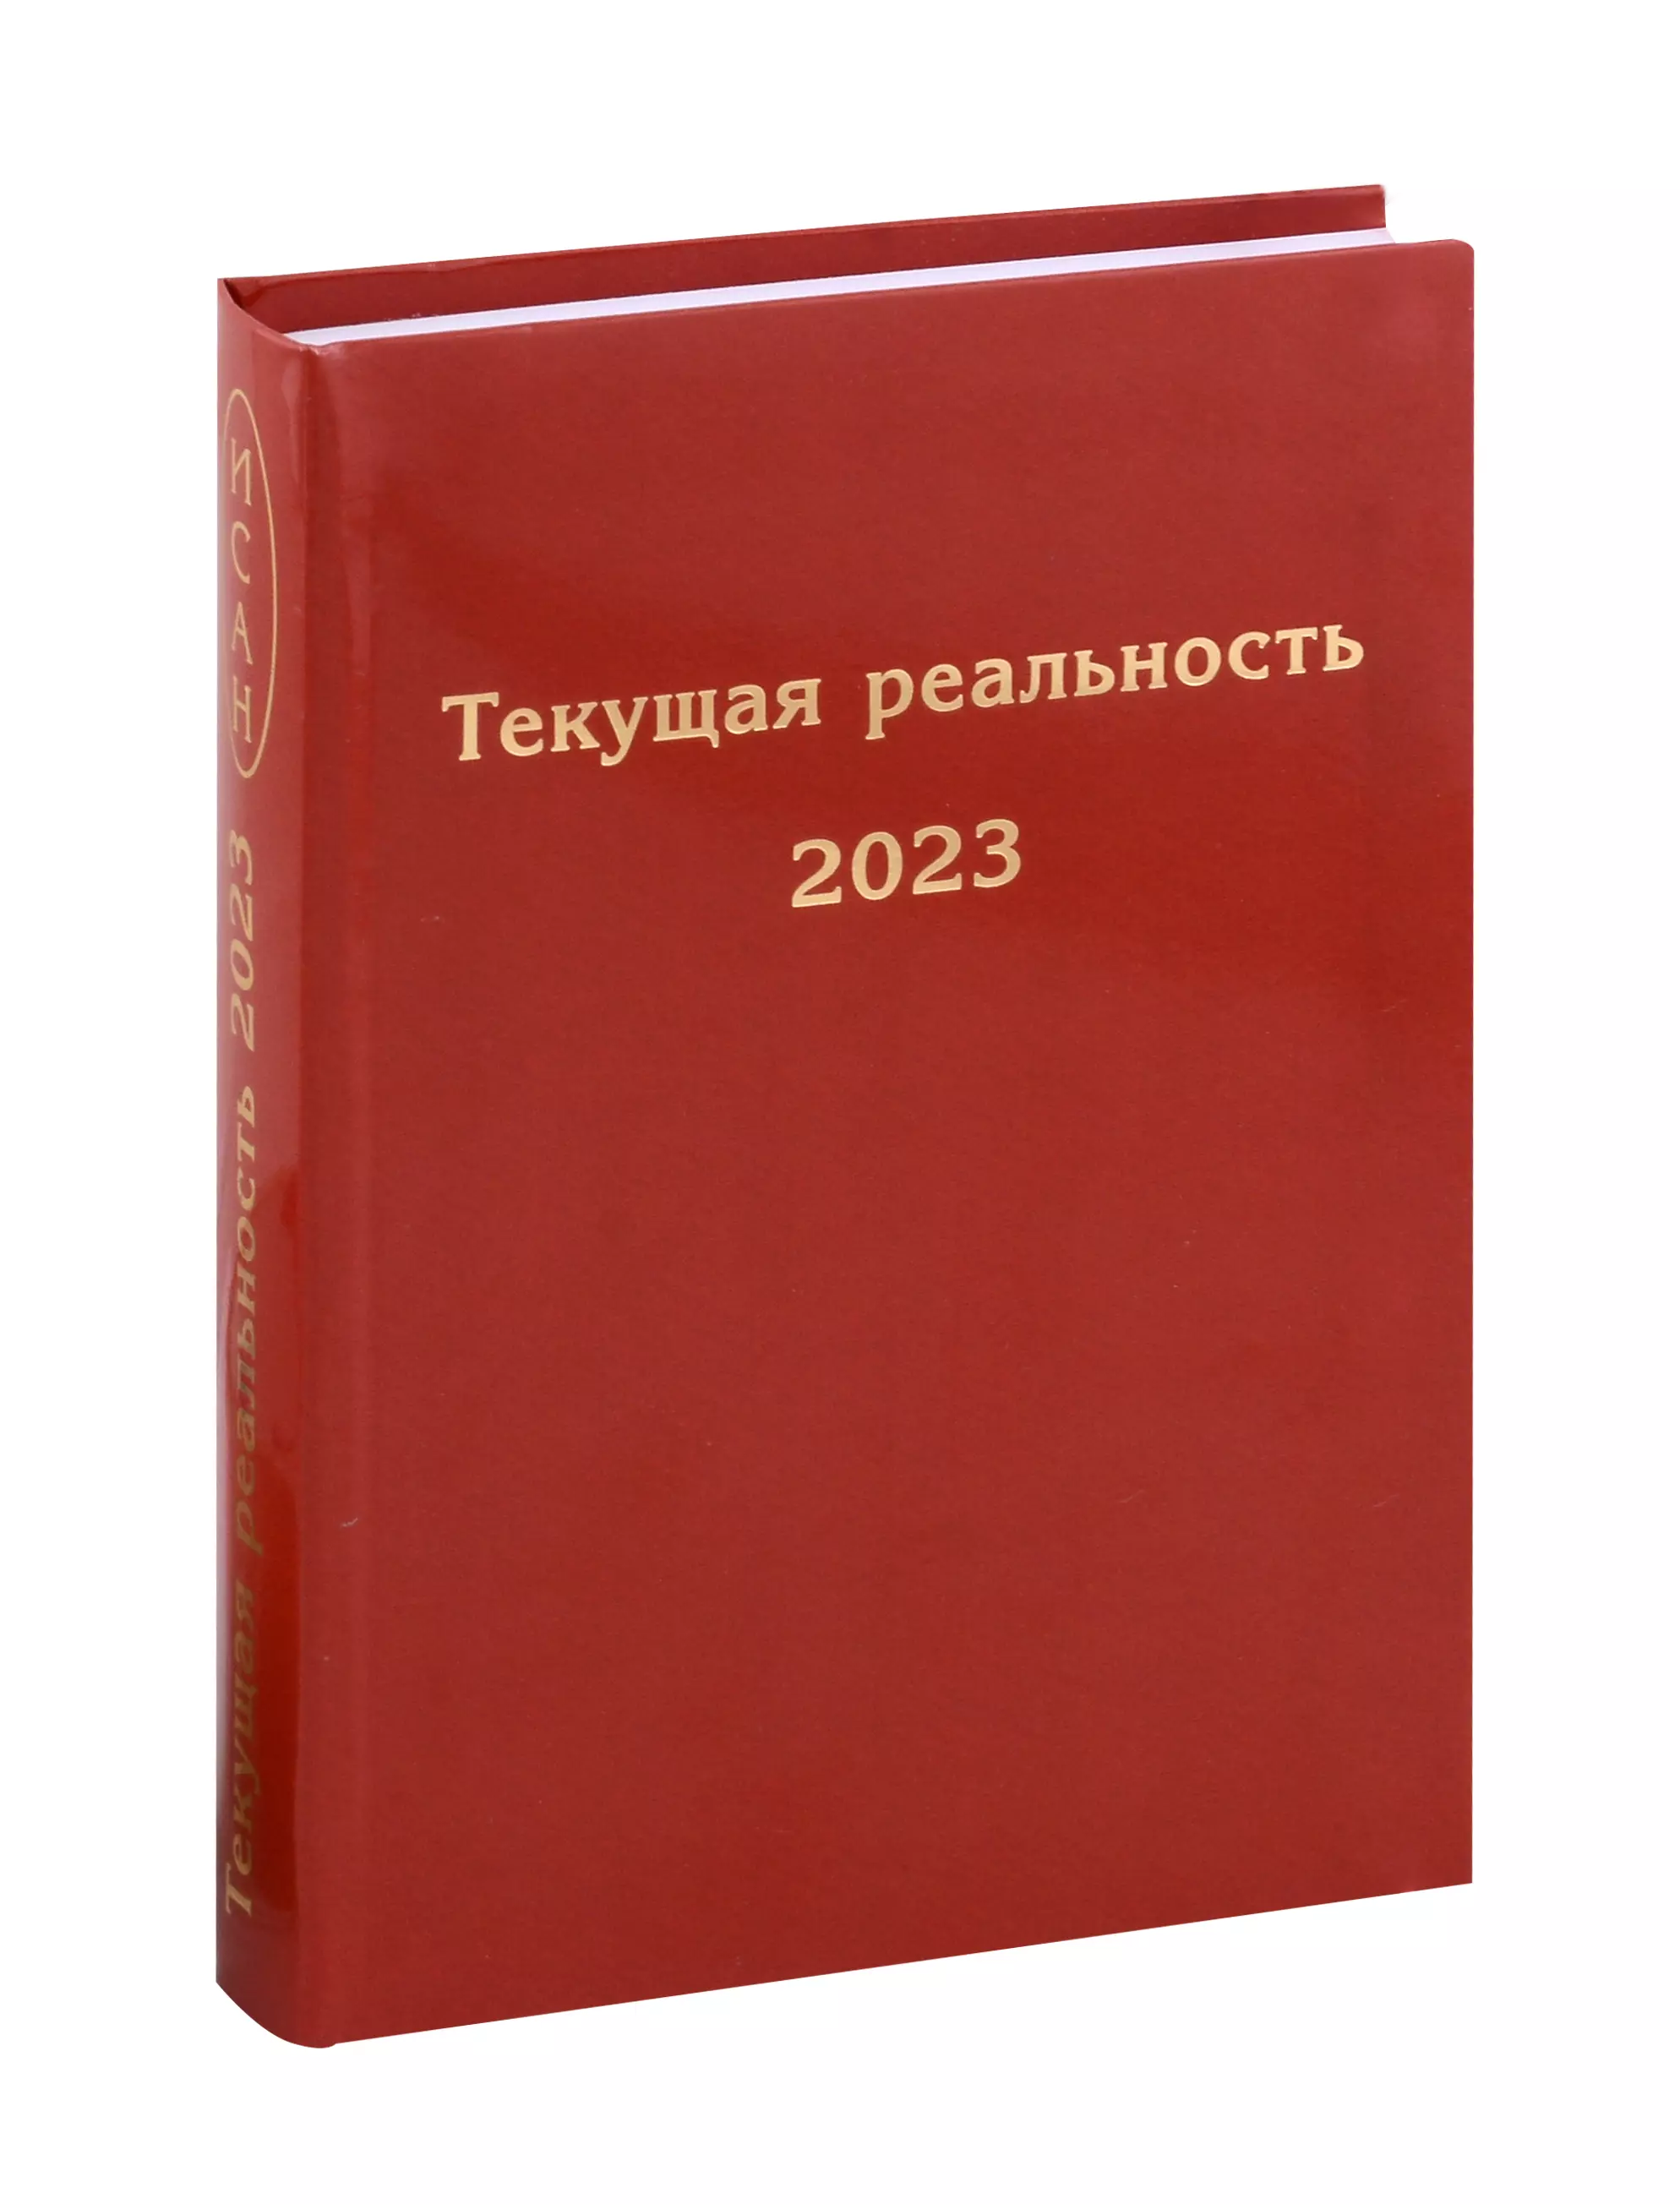 Пономарева Елена Георгиевна Текущая реальность 2023. Избранная хронология